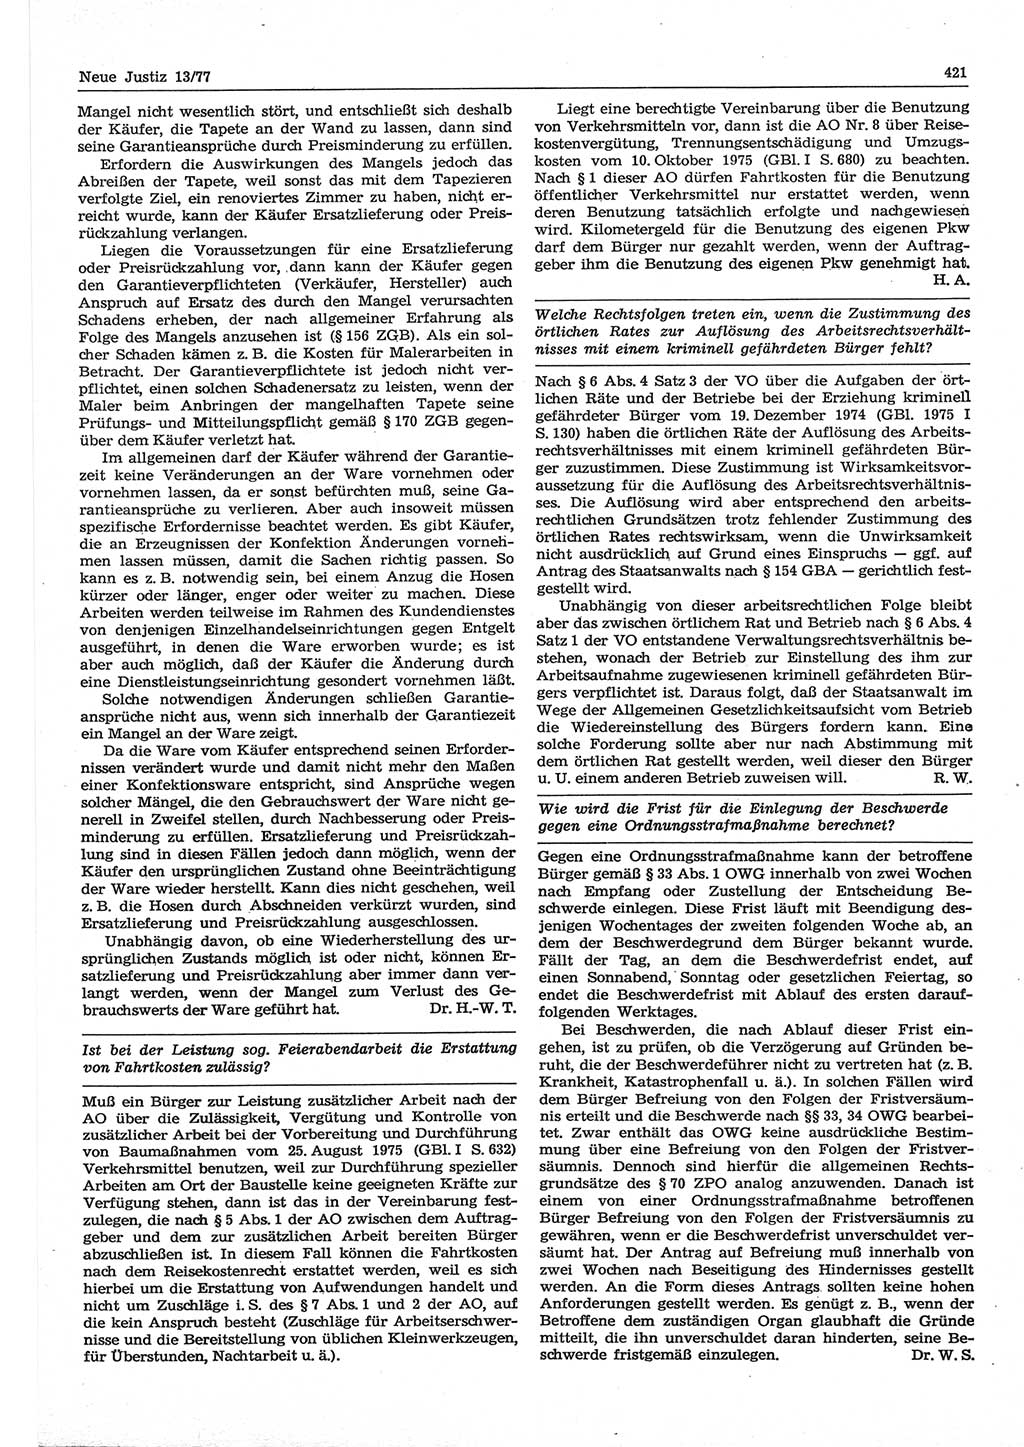 Neue Justiz (NJ), Zeitschrift für Recht und Rechtswissenschaft-Zeitschrift, sozialistisches Recht und Gesetzlichkeit, 31. Jahrgang 1977, Seite 421 (NJ DDR 1977, S. 421)